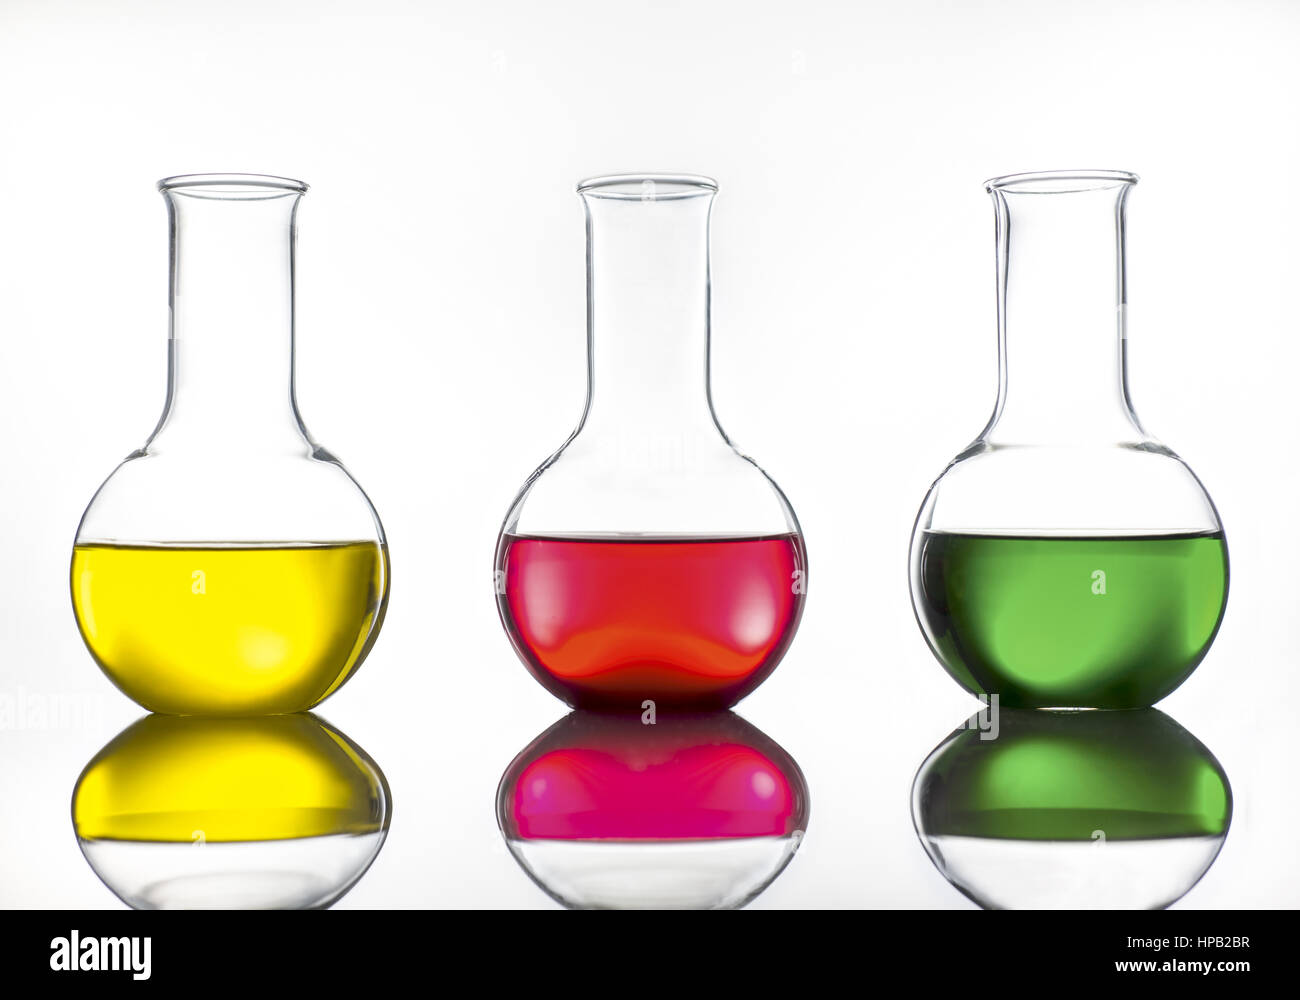 Laborgefaesse aus Glas mit farbigen Fluessigkeiten Stock Photo